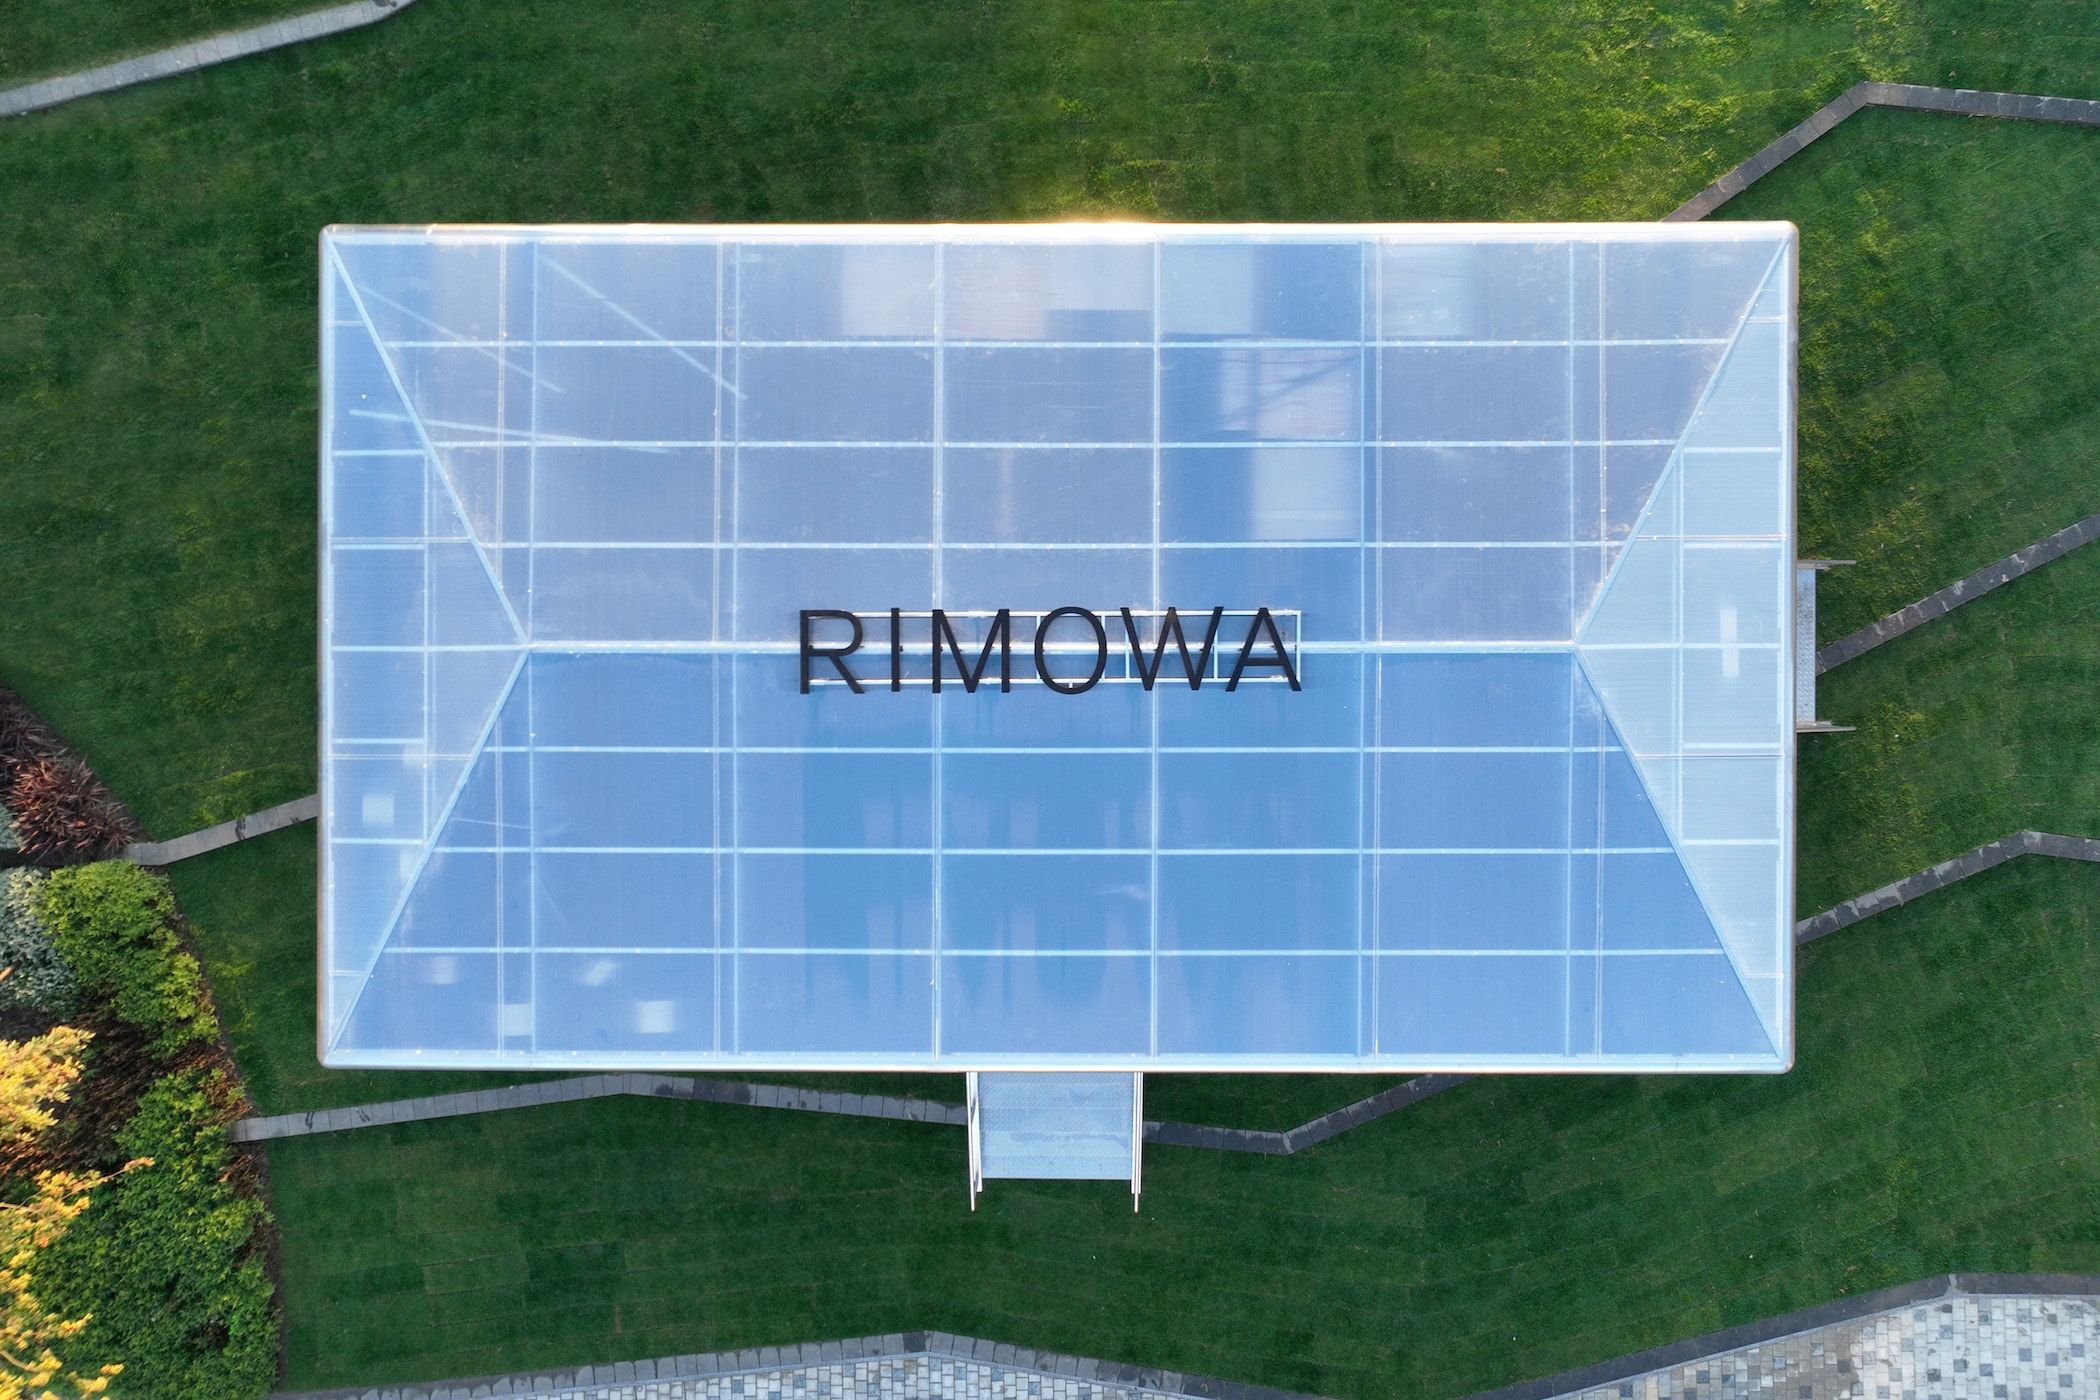 走进 RIMOWA 全新上海限时展览「工艺之境」